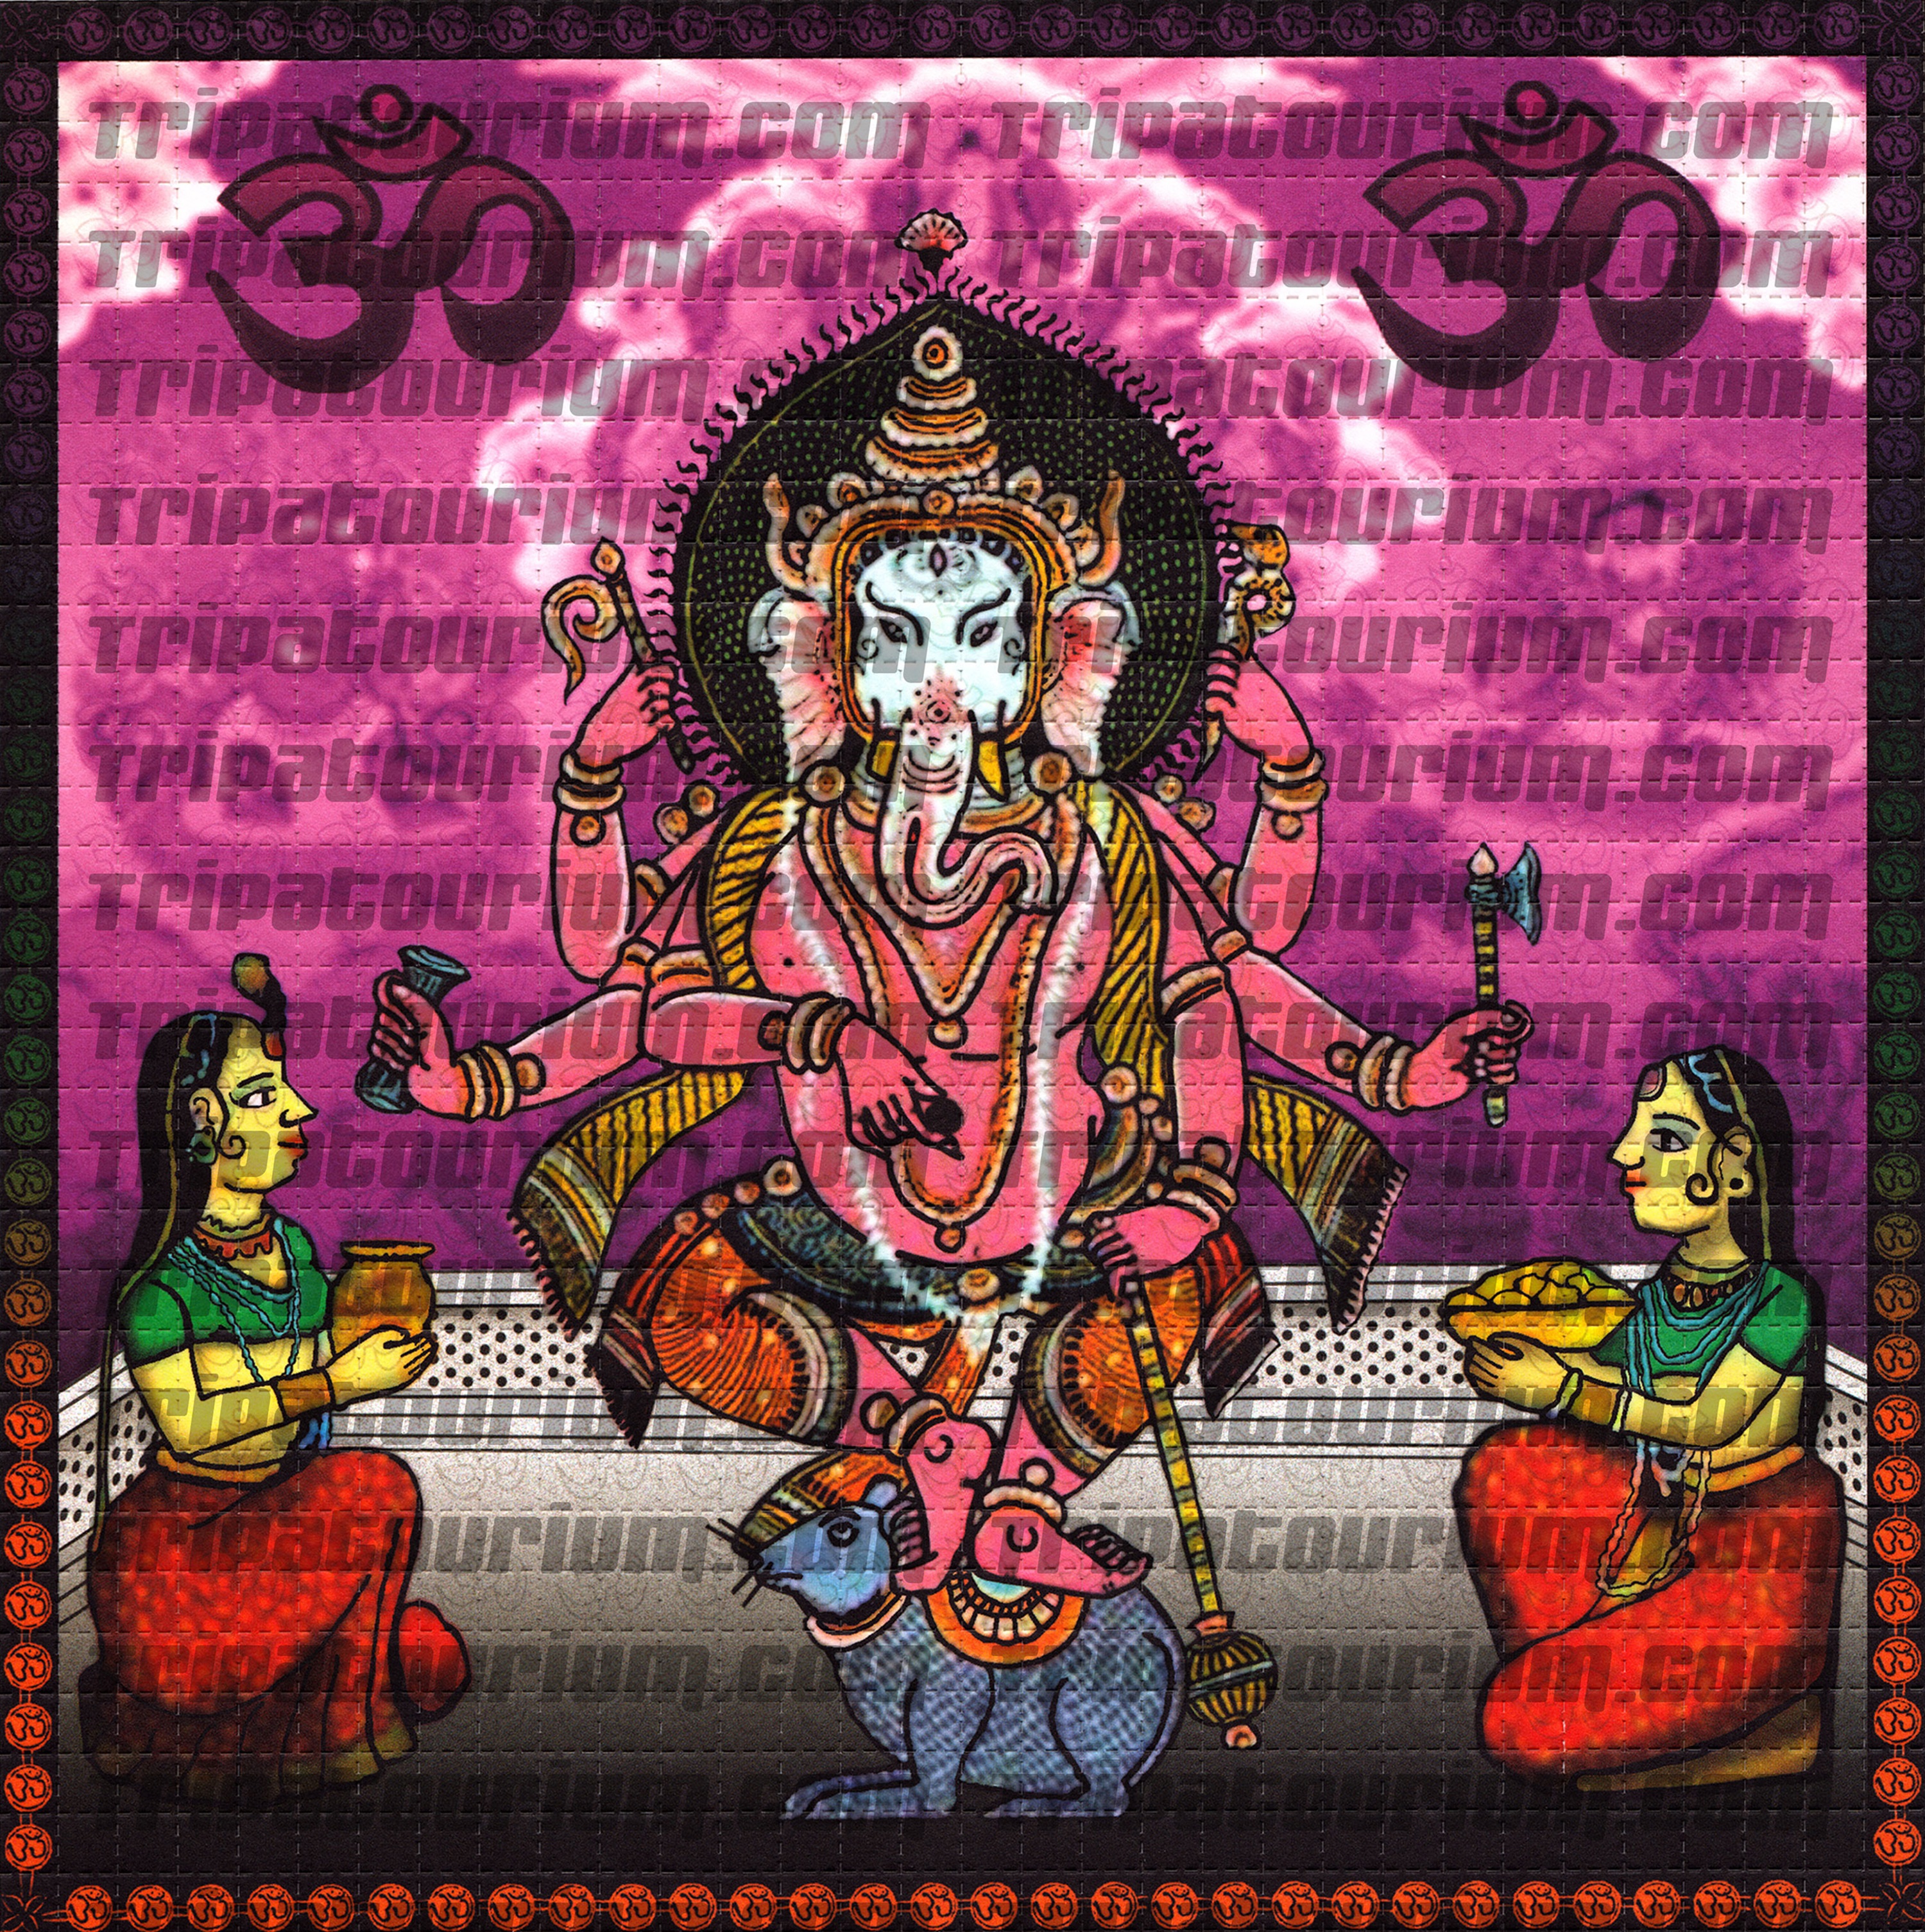 A scan of the LSD Blotter Art Print Ganesh by Rev. Samuel